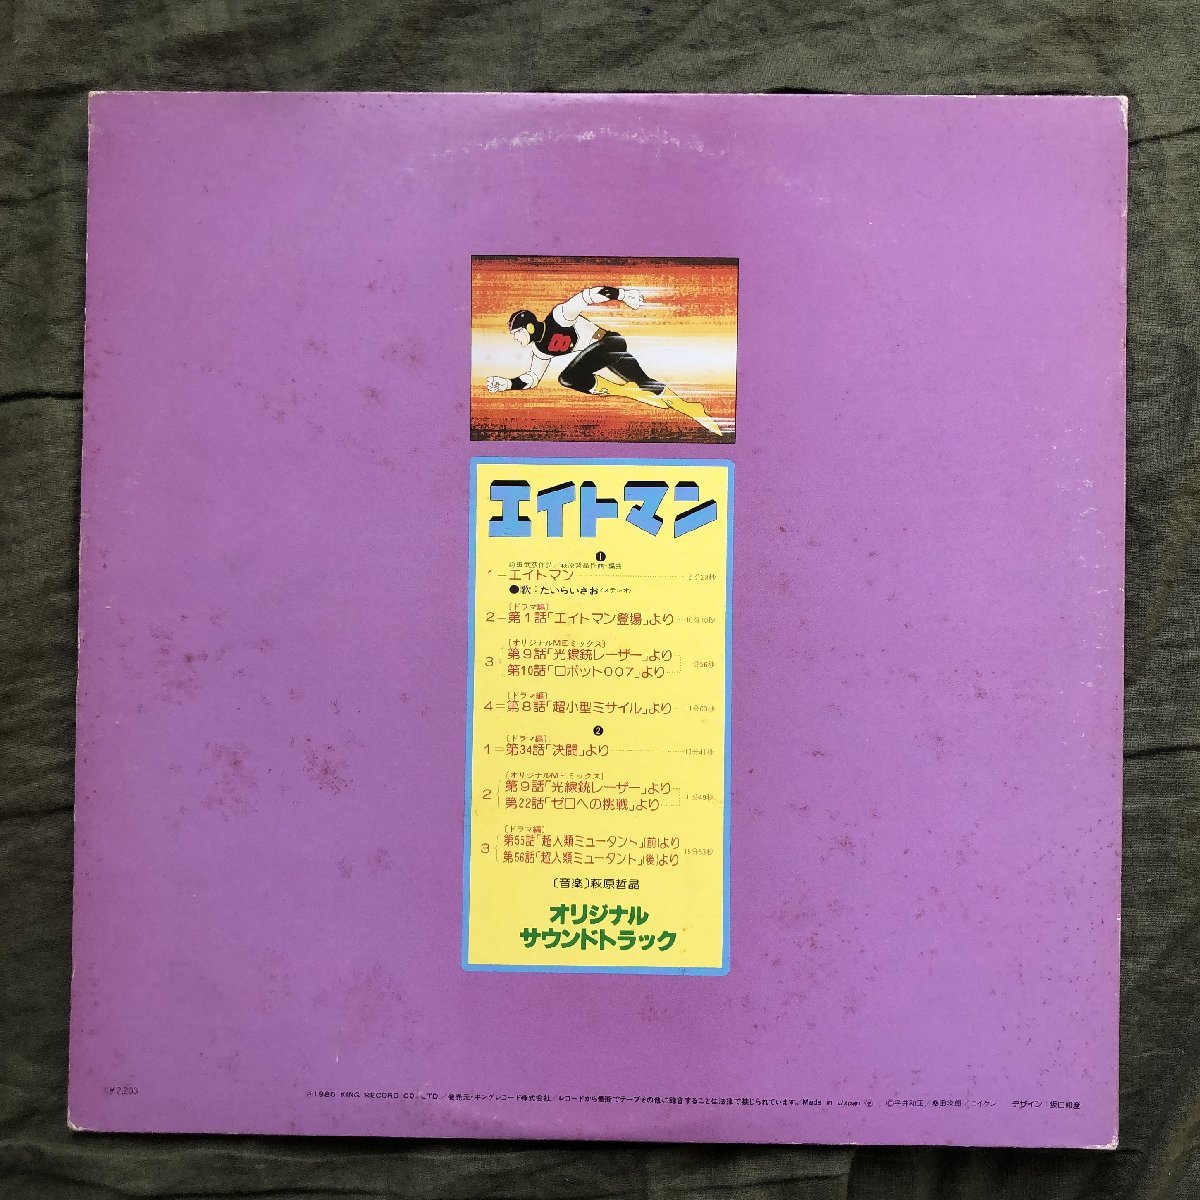 良盤 1980年 国内盤 オリジナルリリース盤 エイトマン Eight Man (8 Man) LPレコード S/T アニメ マンガ 平井和正_画像2